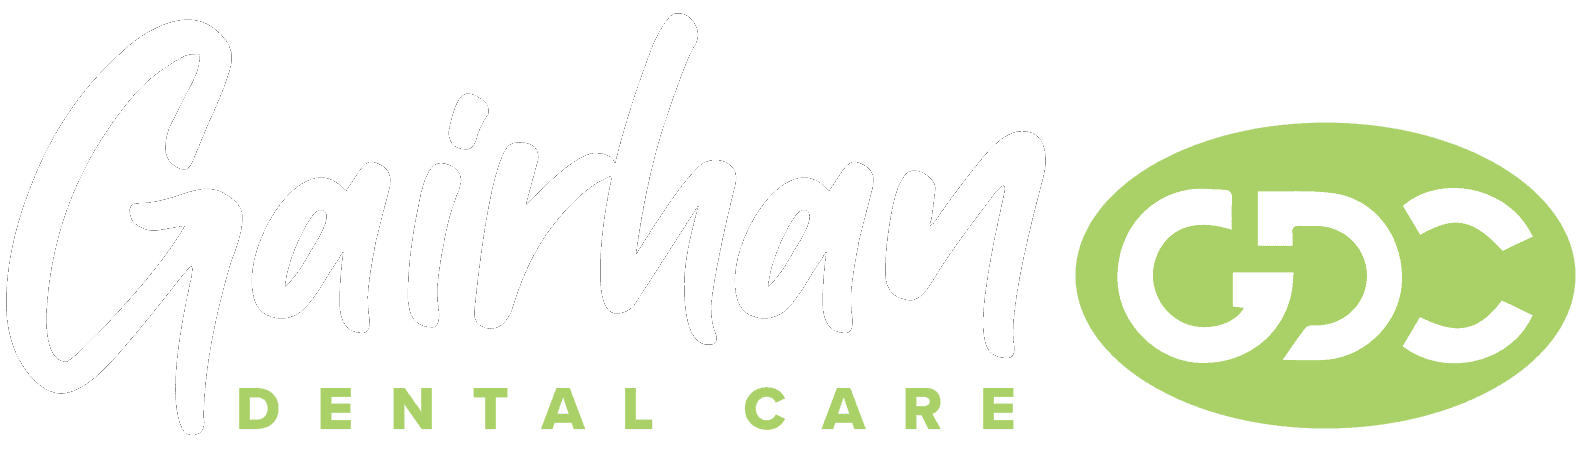 Gairhan Dental Care Logo white - Meet Our Team